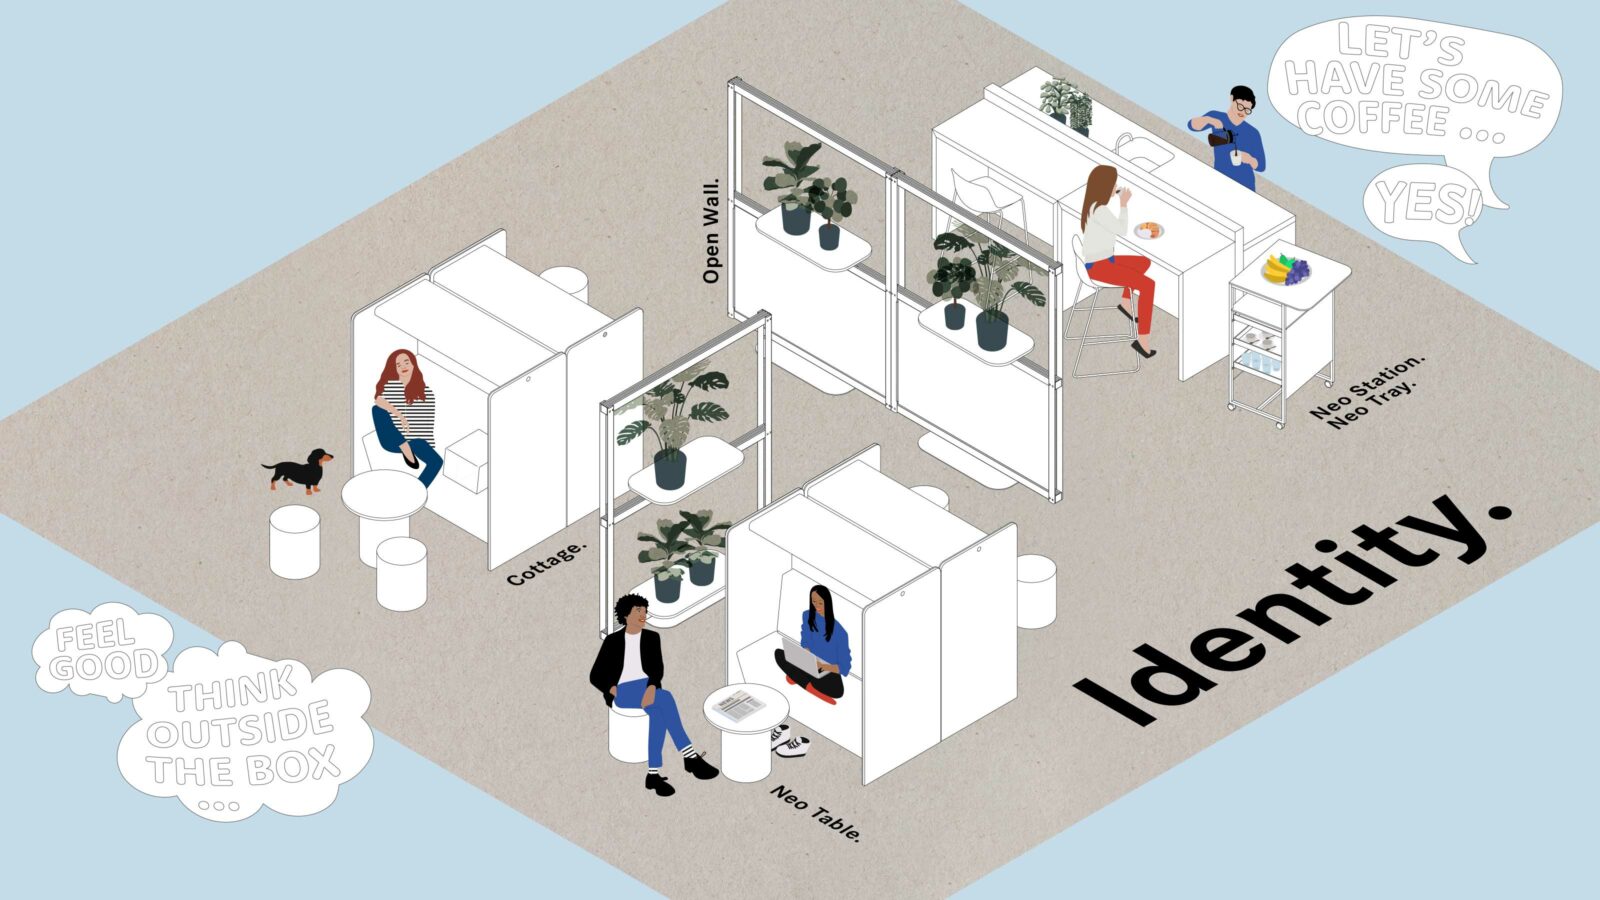 Zeichnung zum Thema Unternehmenszugehörigkeit zeigt Büromöbel auf einer Fläche und Menschen die miteinander arbeiten, Kaffee trinken und entspannen.